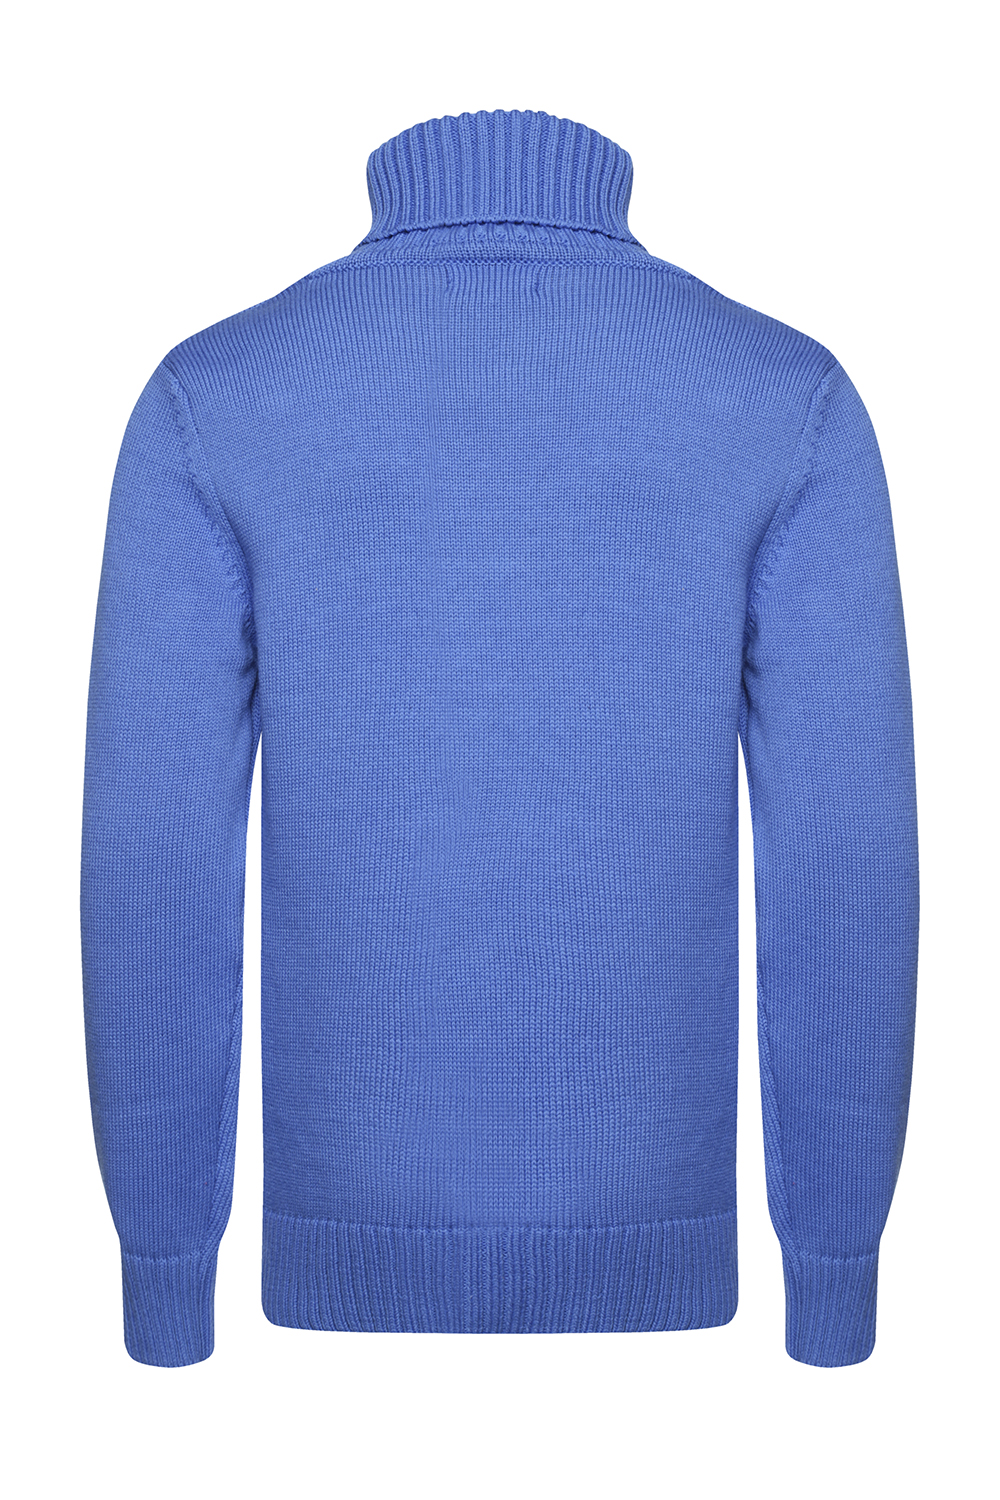 Синий свитер с принтом